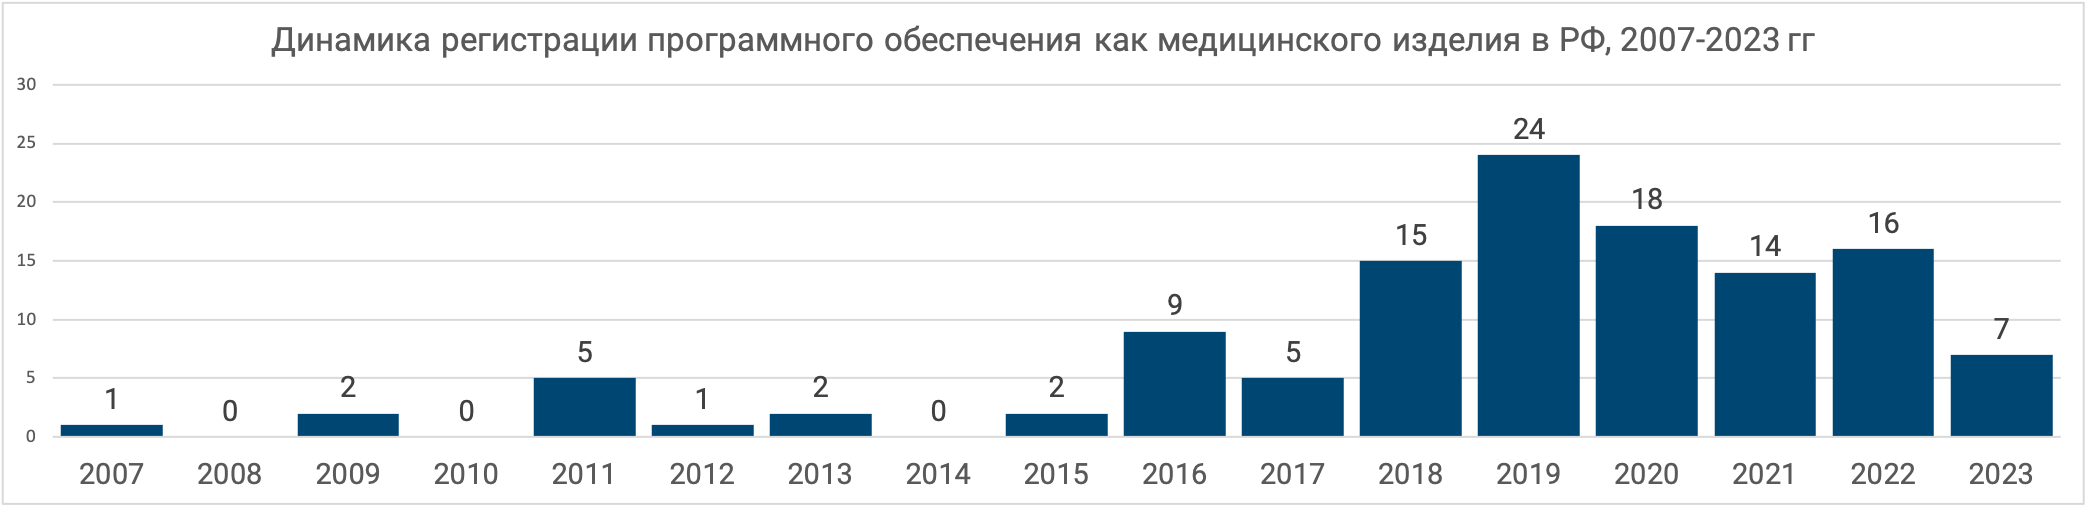 Динамика регистрации программных медицинских изделий в РФ 2009-2022